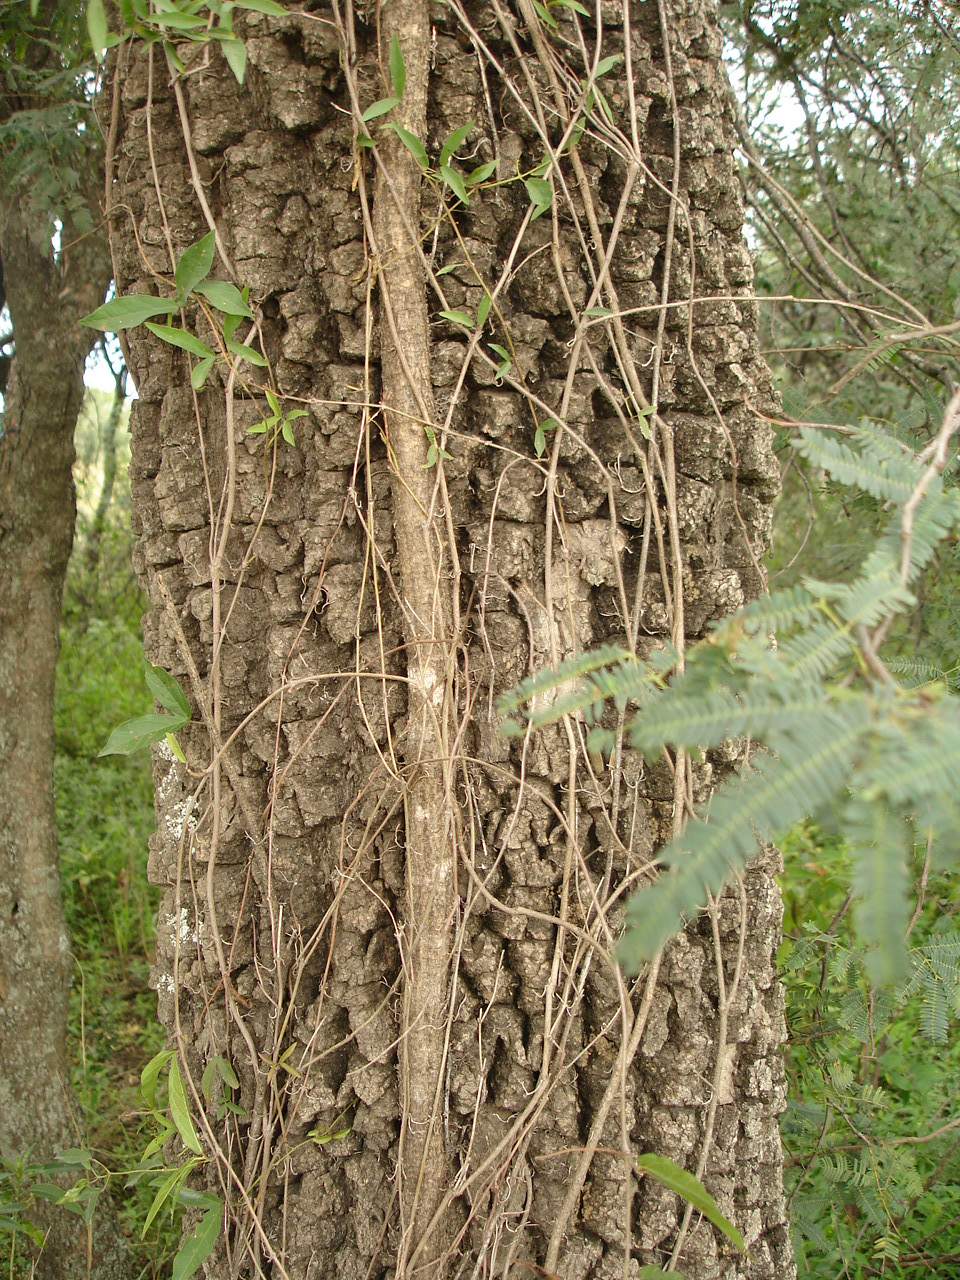 Este tronco de Quebracho Blanco se levanta, trepado por una enredadera. 

El tronco crece derecho, haciendo sombra a los árboles que crecen debajo, como Garabatos Machos y Hembras. 